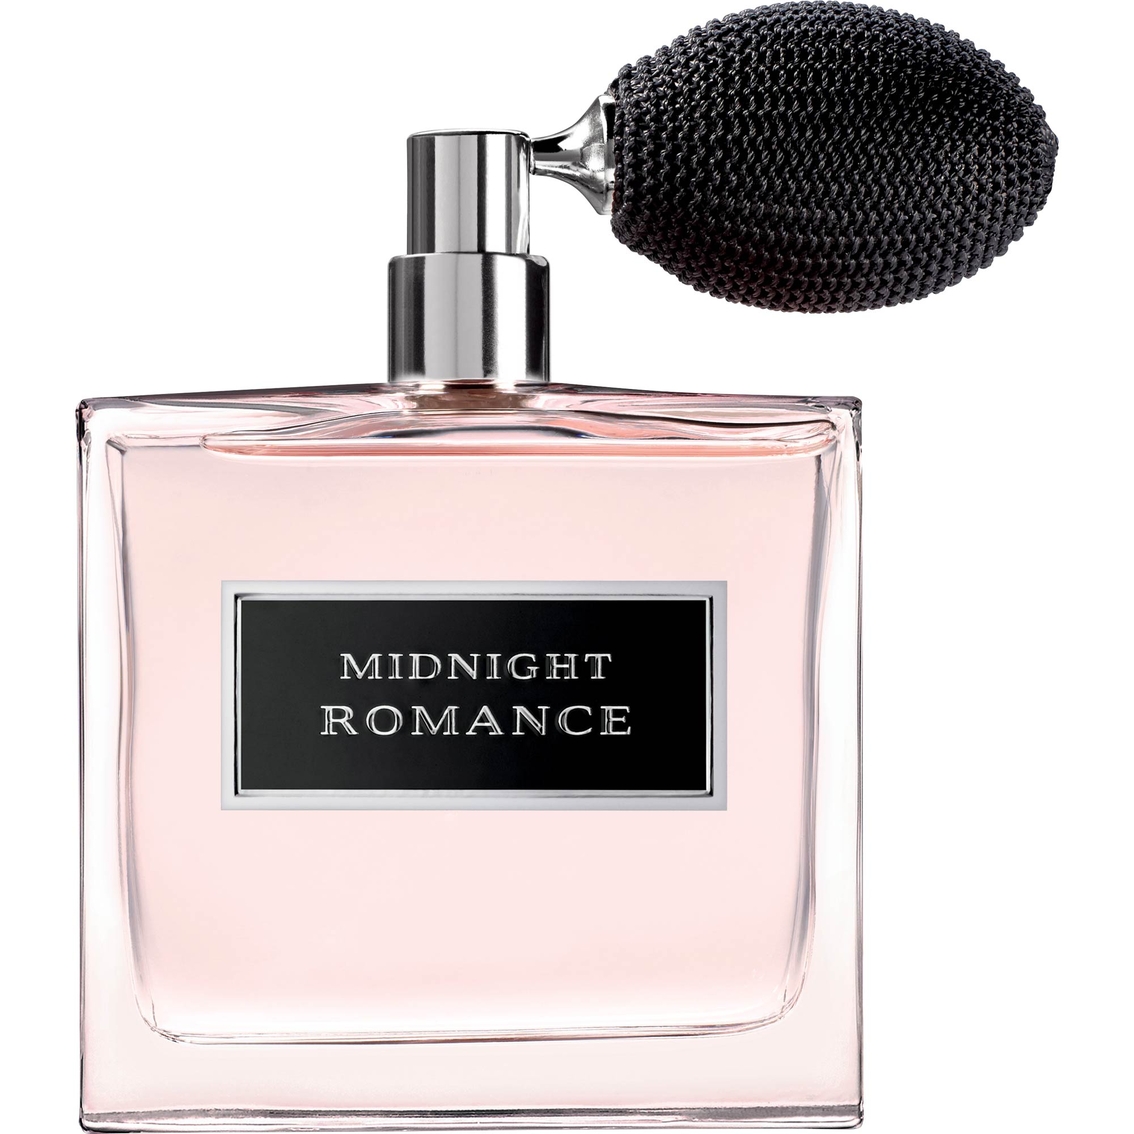 ralph lauren midnight romance eau de parfum